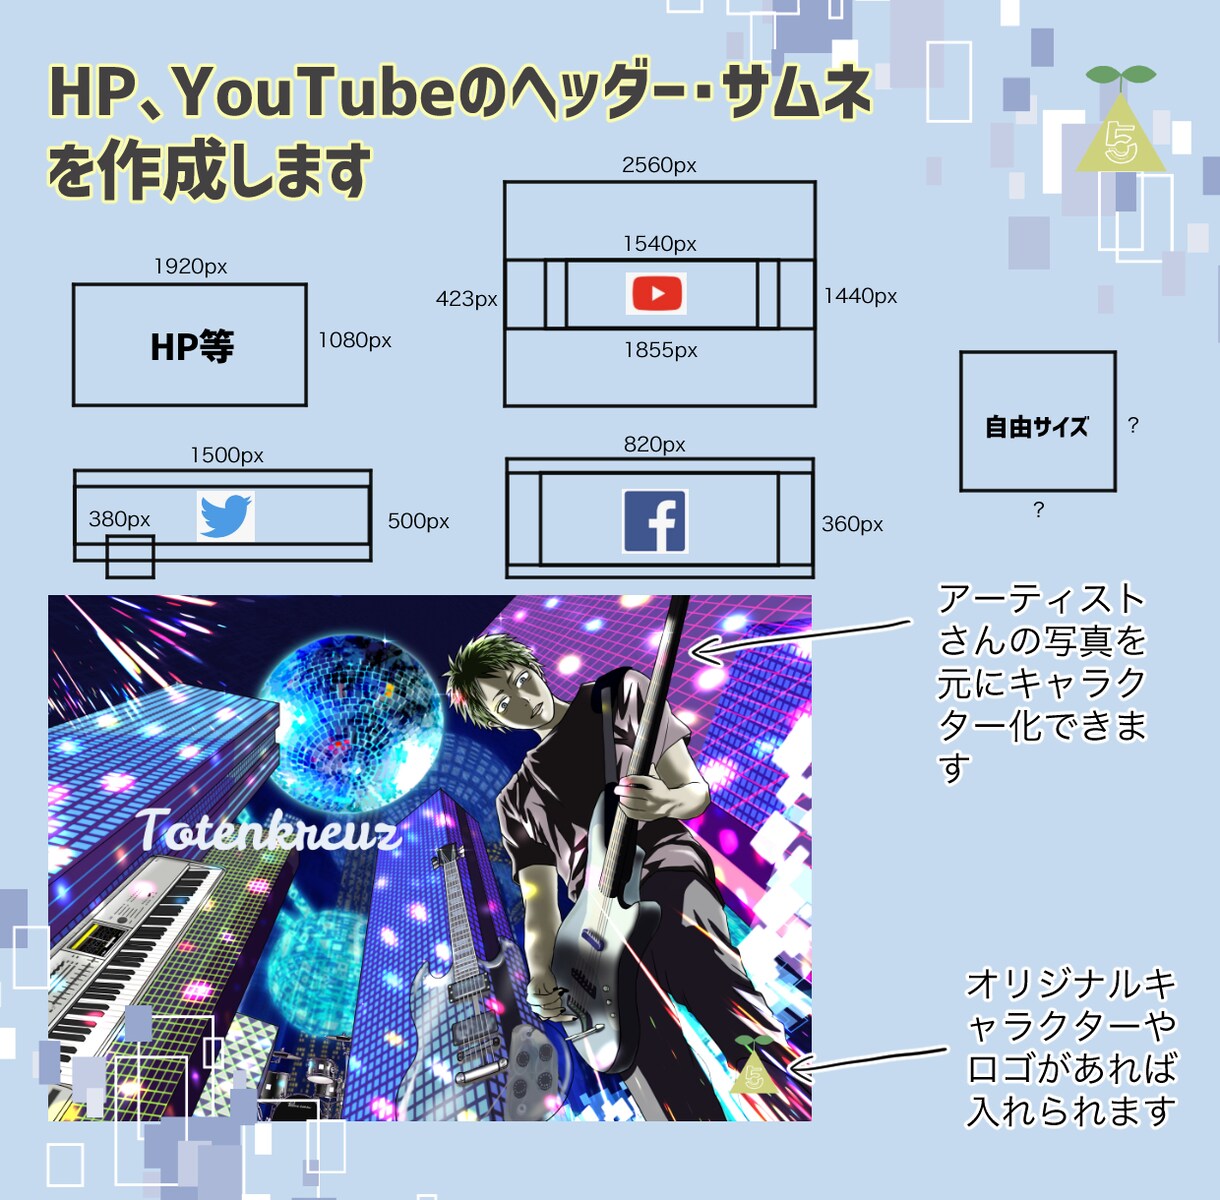 HP、YouTubeのヘッダー・サムネを作成します 似顔絵のキャラ絵入れられます！ イメージ1